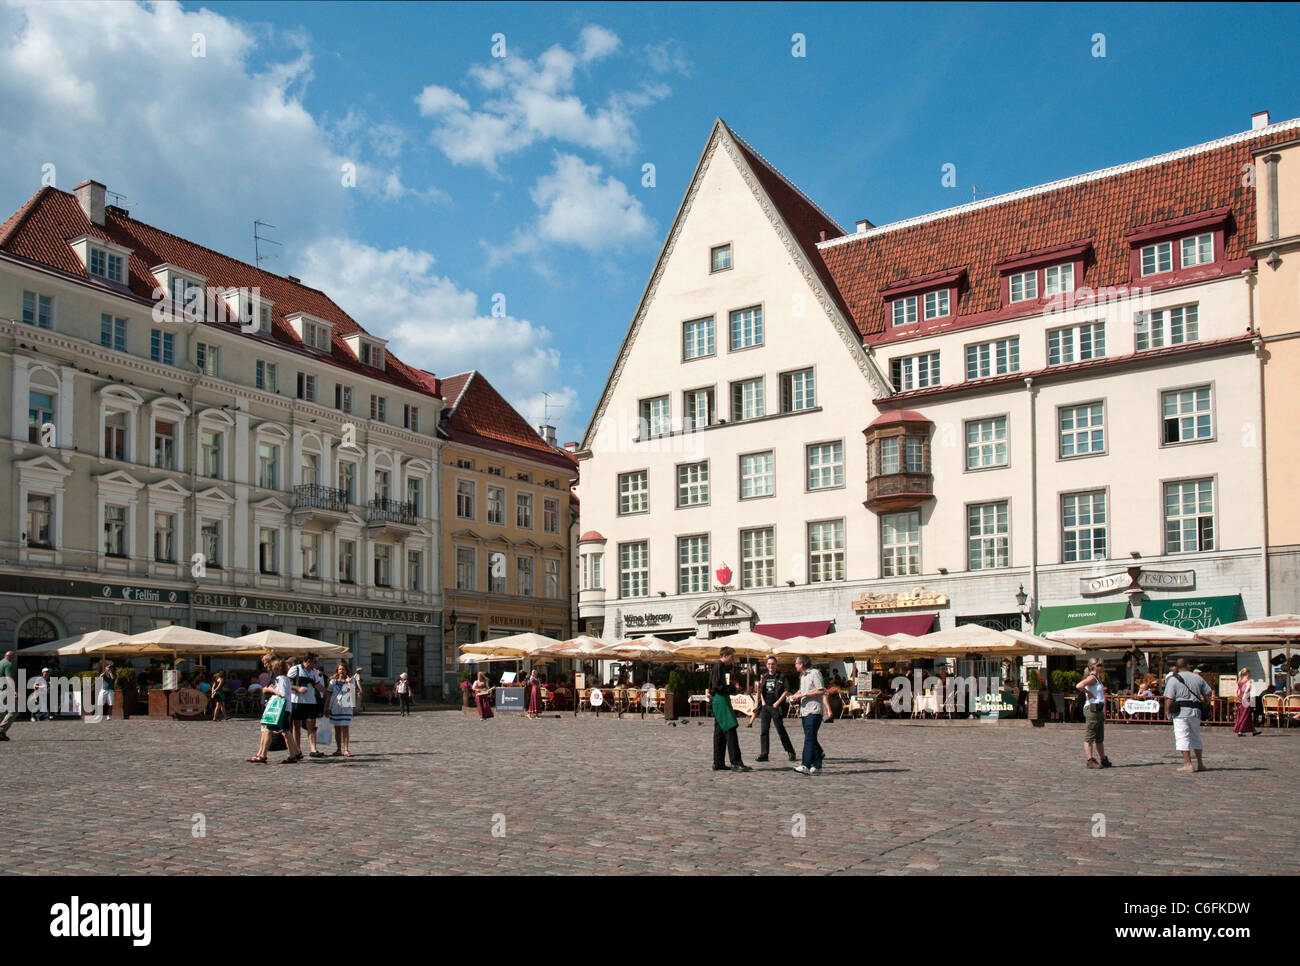 Raekoja Plats (Town Hall Square) in Tallinn, Estonia Stock Photo